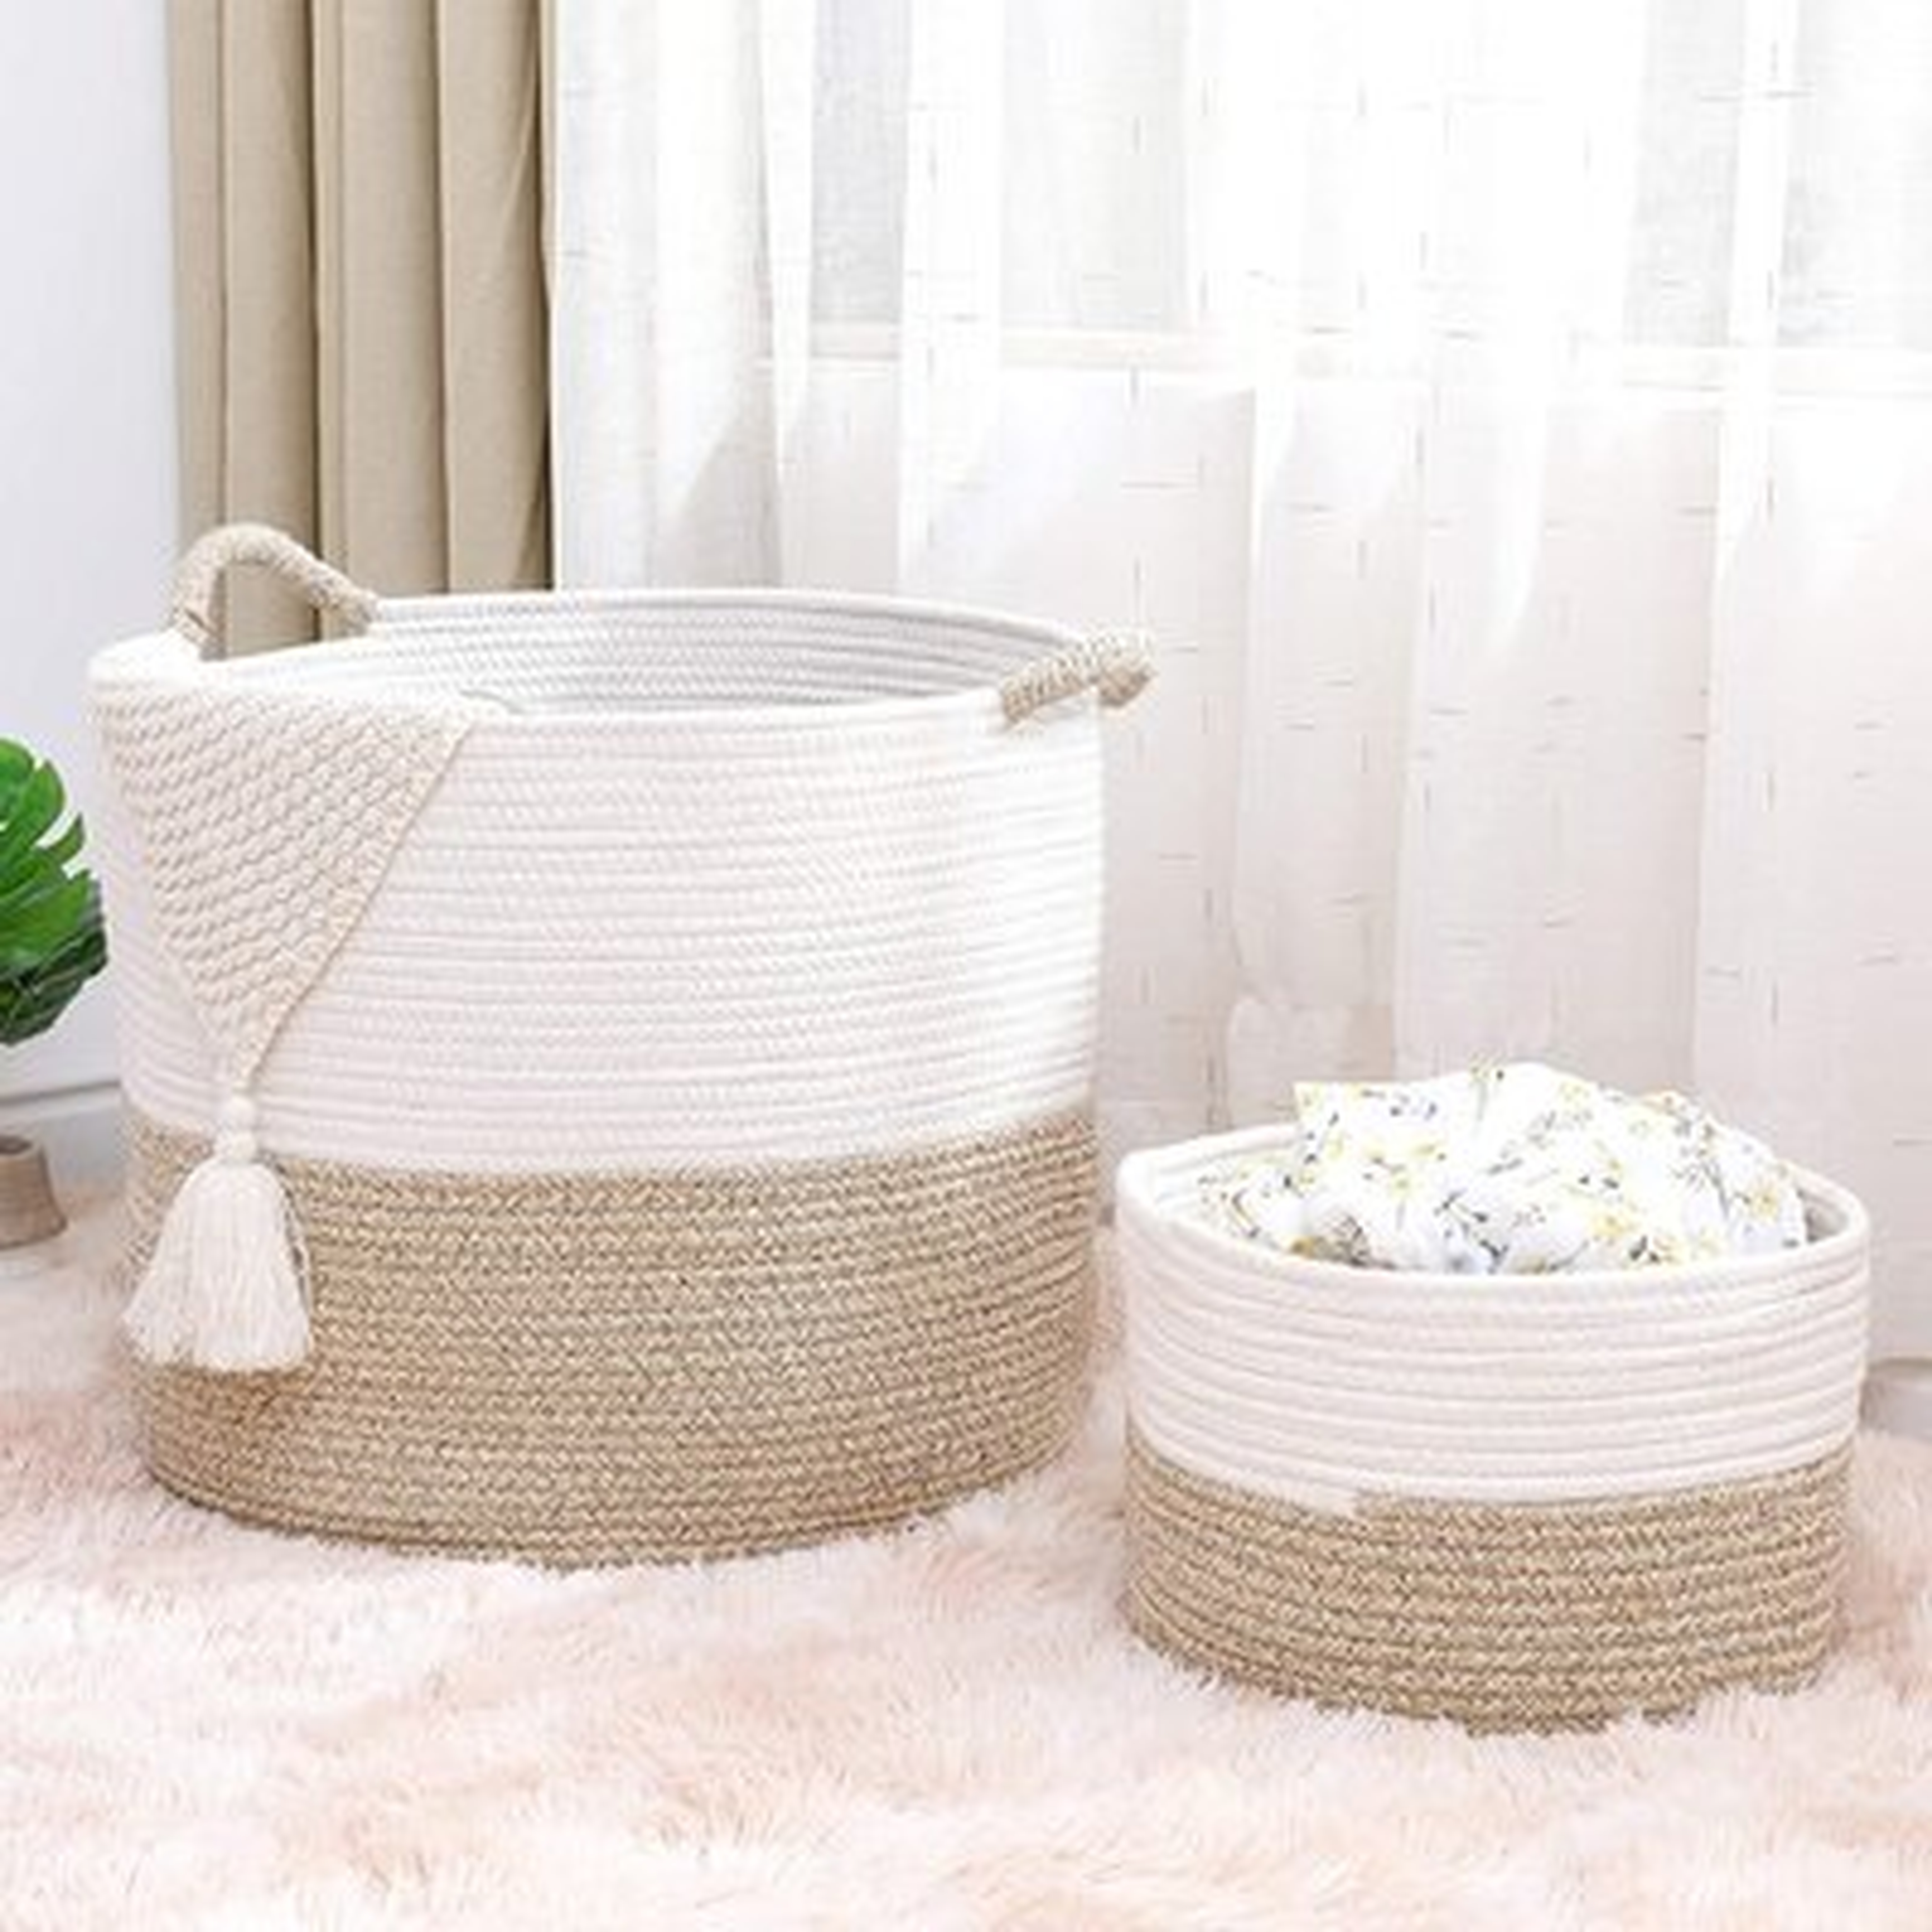 2 Piece Fabric Basket Set - Wayfair